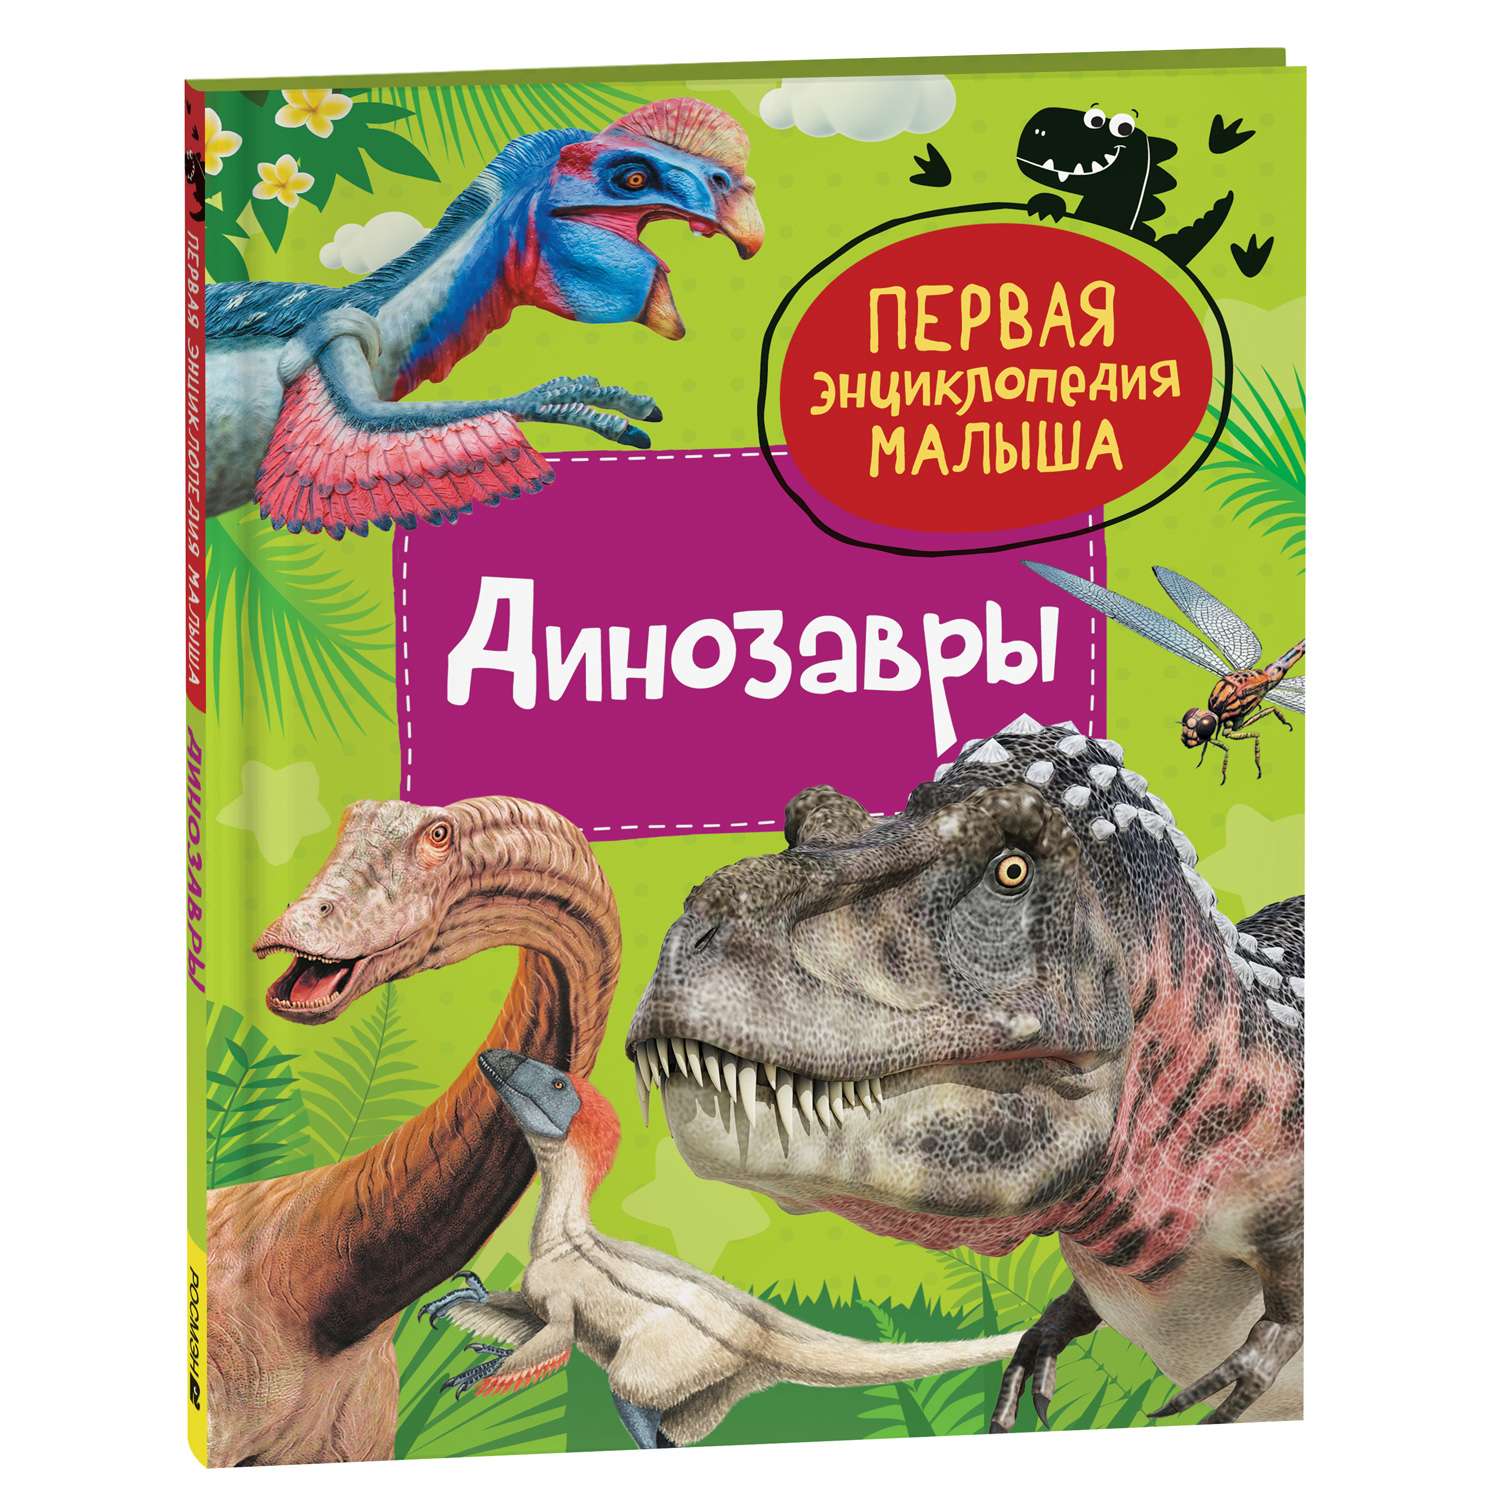 Книга Динозавры Первая энциклопедия малыша - фото 1